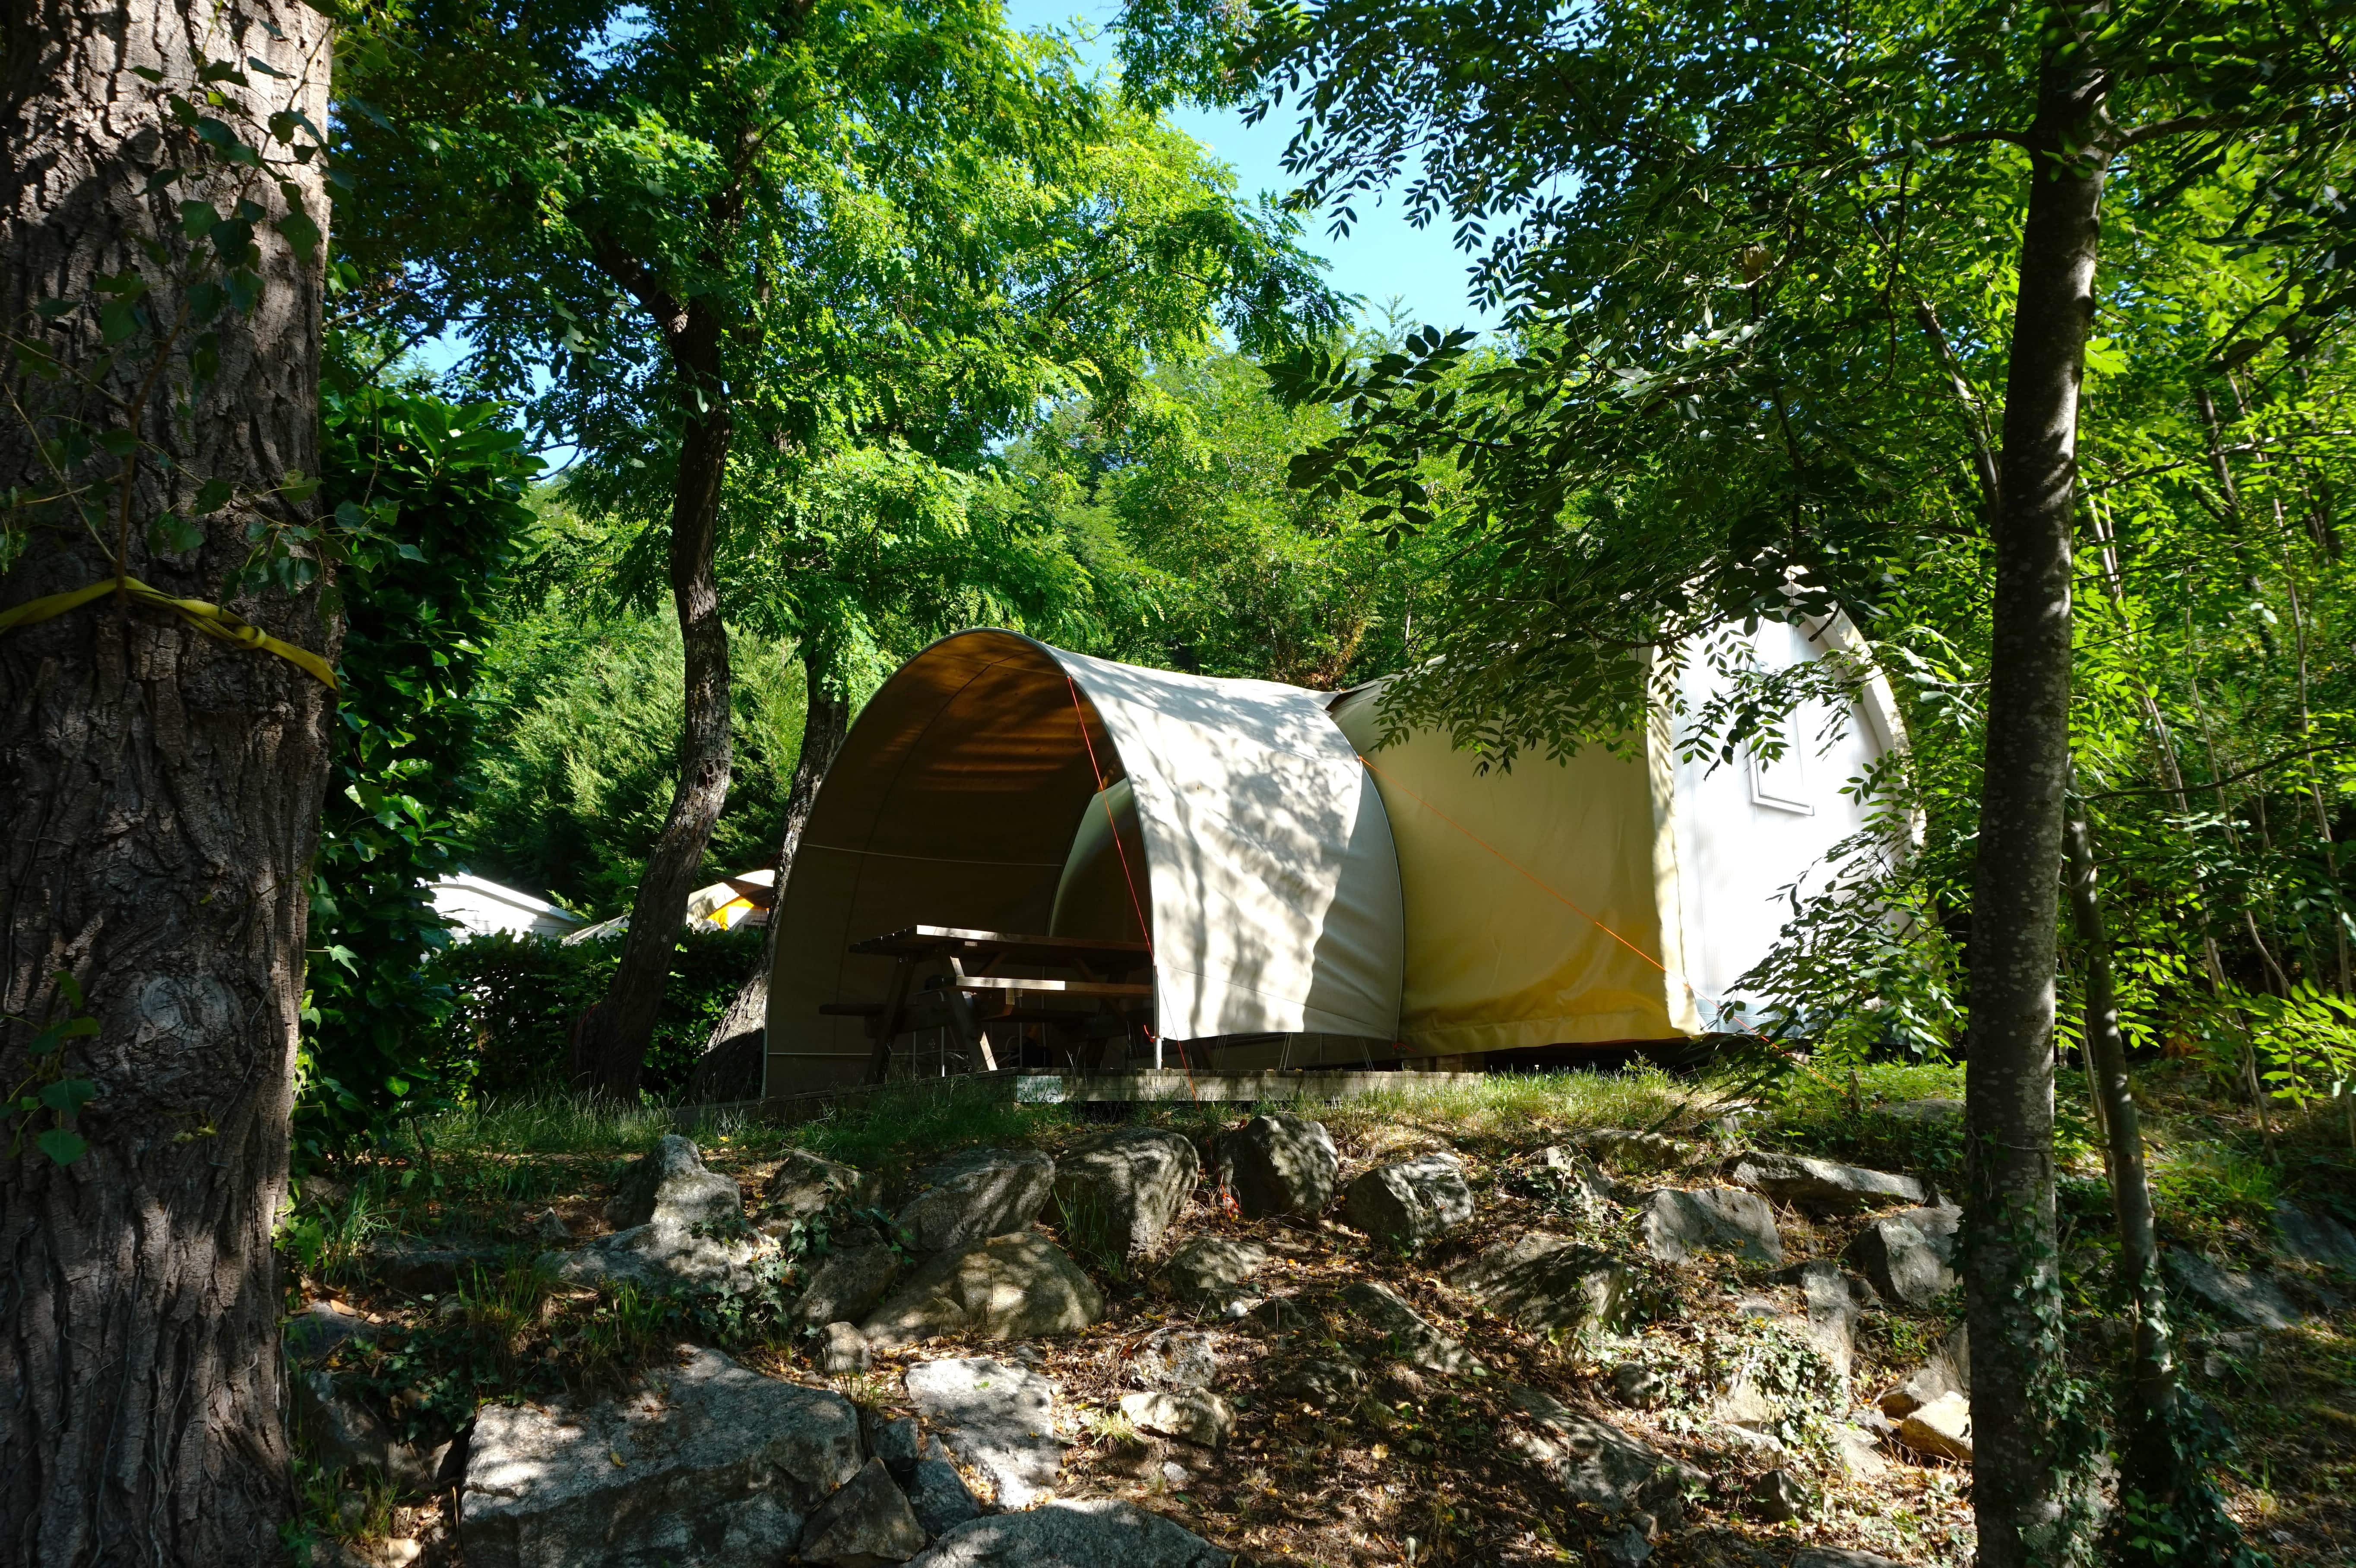 Location - Coco Sweet Dimanche - Dimanche / 2 Chambres - Bord De Rivière (Sans Sanitaires) - Camping Le Barutel